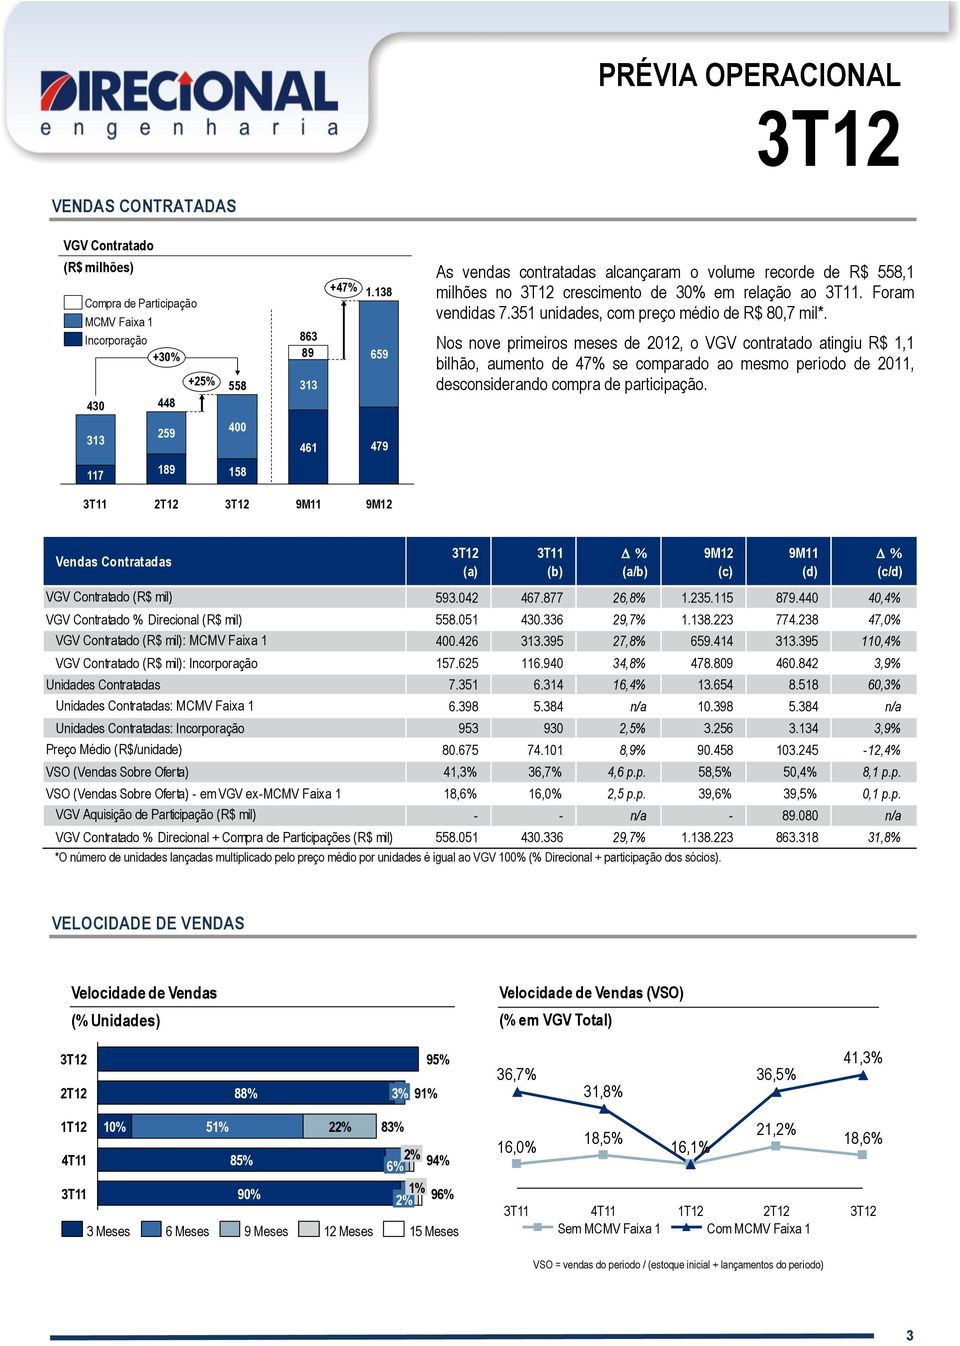 Nos nove primeiros meses de 2012, o VGV contratado atingiu R$ 1,1 bilhão, aumento de 47% se comparado ao mesmo período de 2011, desconsiderando compra de participação.